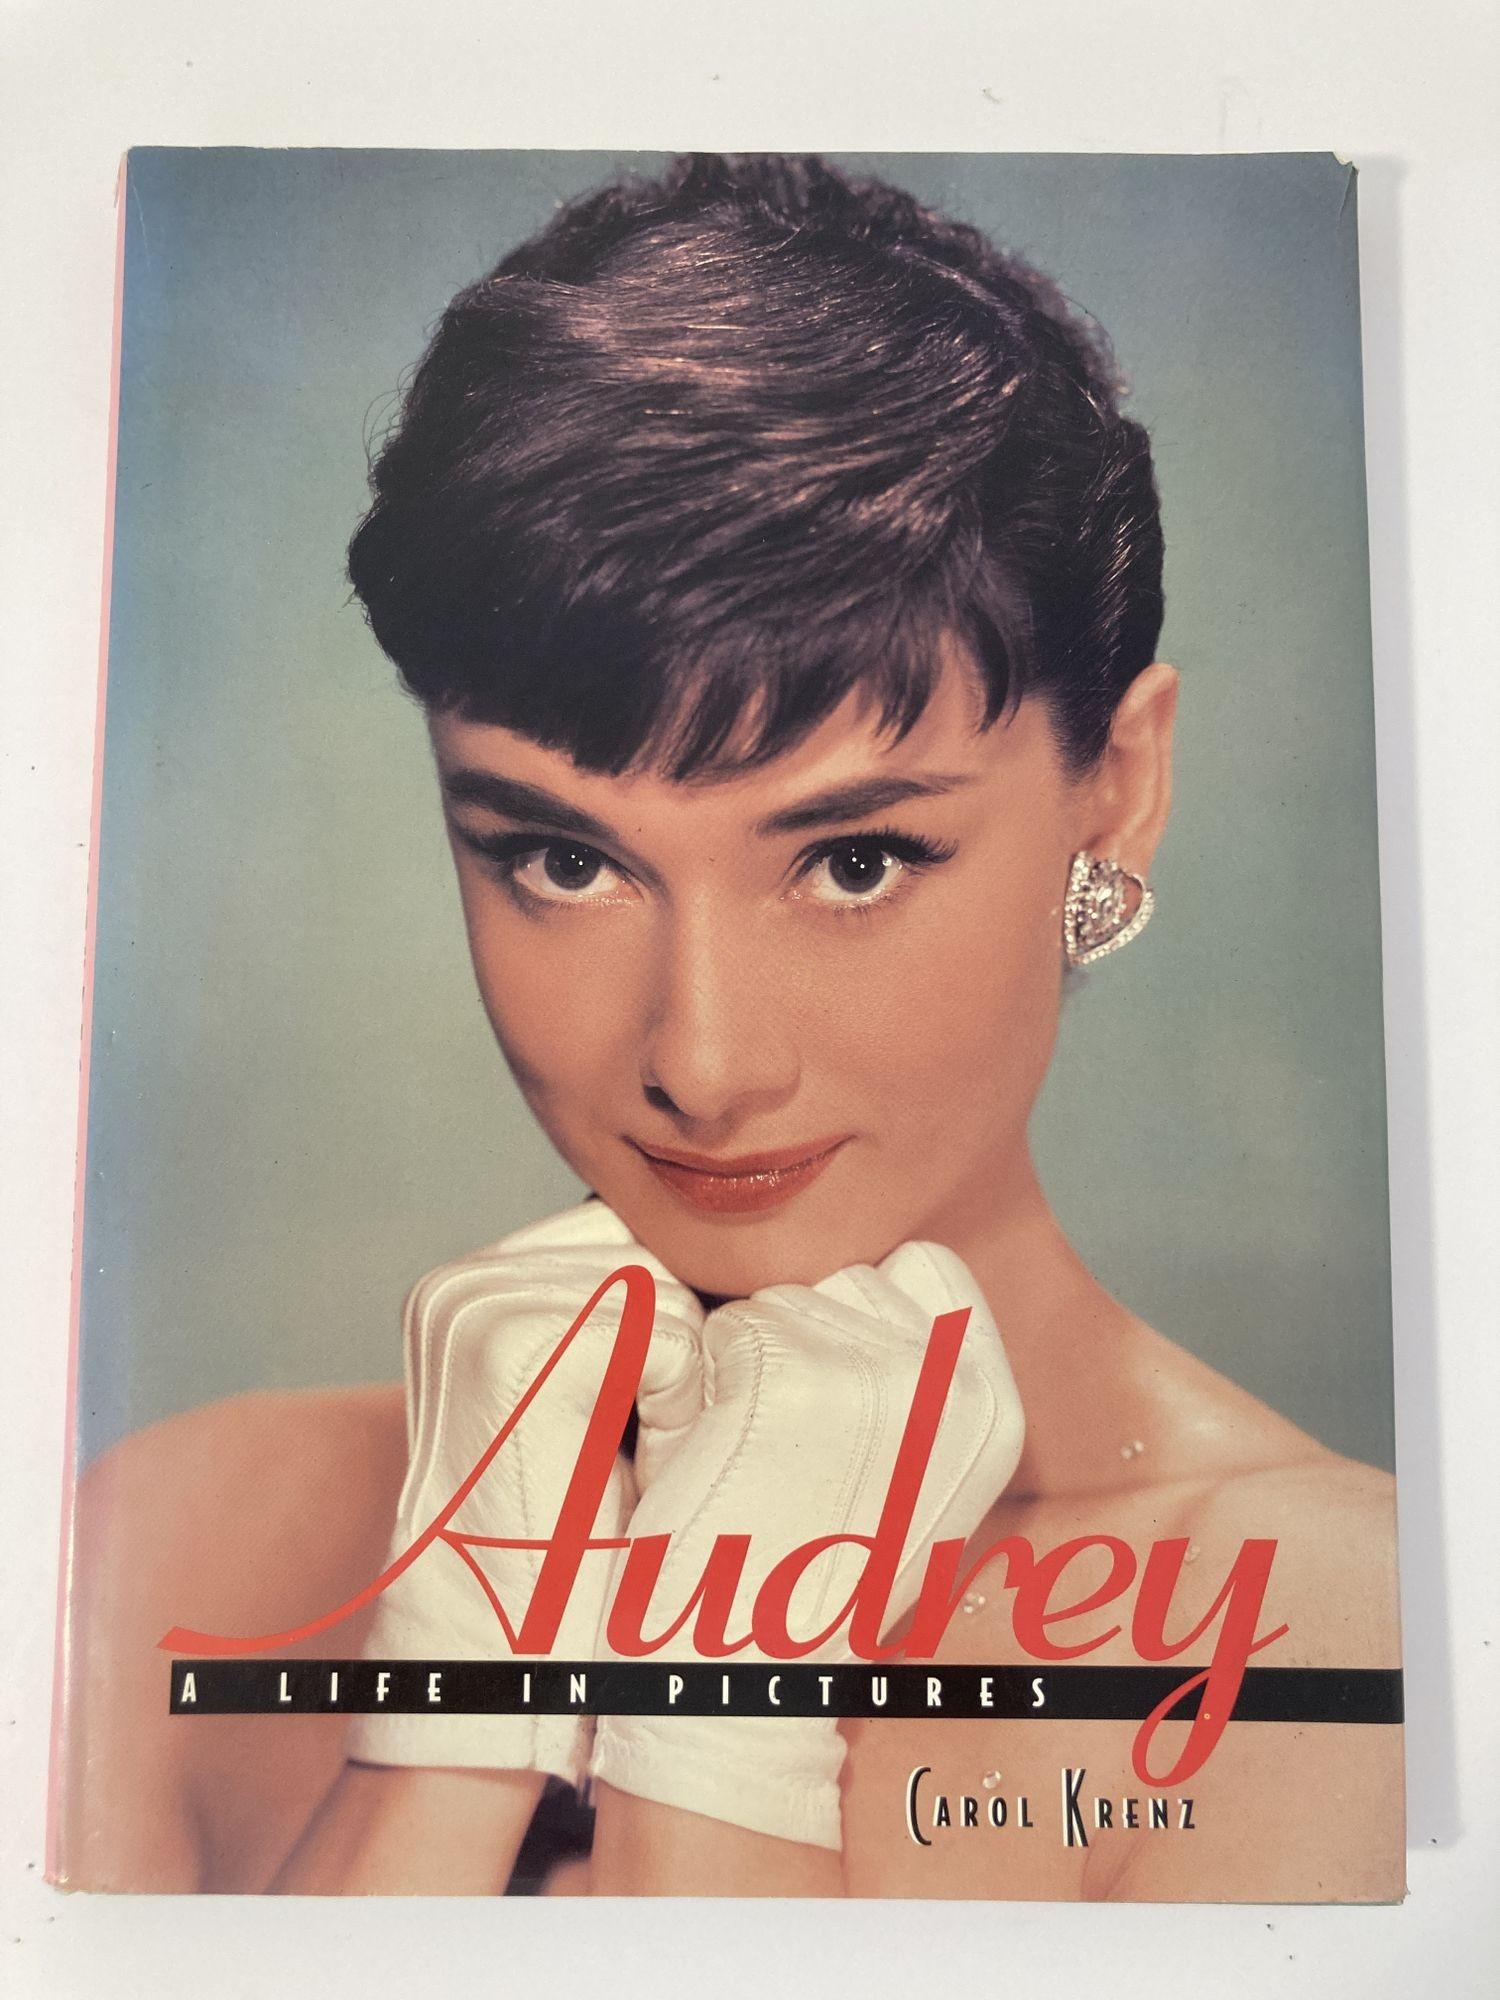 Audrey : A Life in Pictures Carol Krenz Metrobooks, 1997.
De belles photos colorées d'Audrey que vous allez adorer. Merveilleux grand livre de salon. Souvenez-vous d'Audrey dans toutes ses photos et poses préférées.
Album virtuel de photos